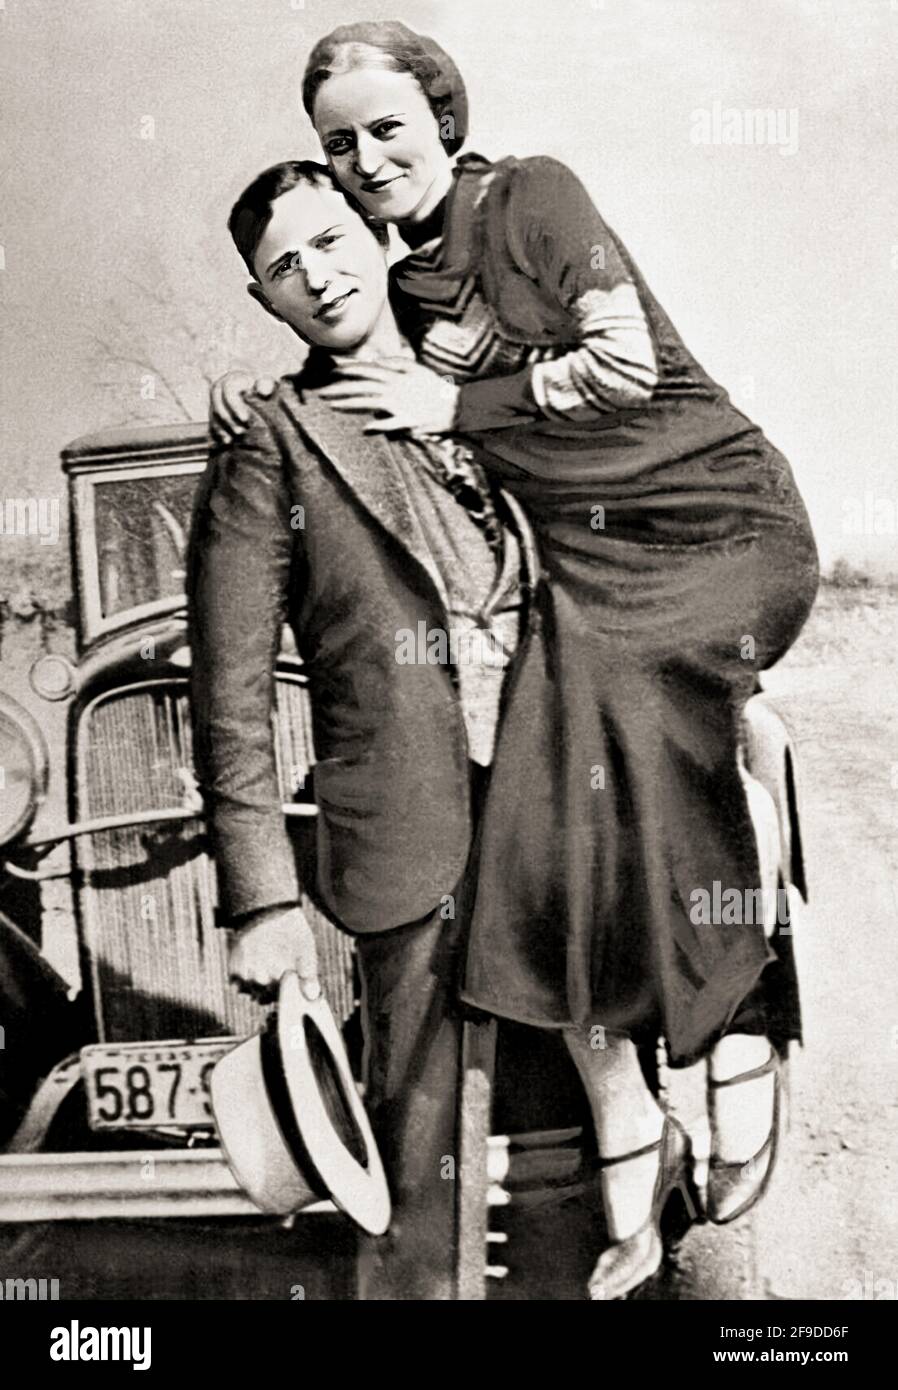 6 dimensioni! FUORILEGGE Bonnie Parker di Bonnie e Clyde GANG POSTER FOTO COLORATA 